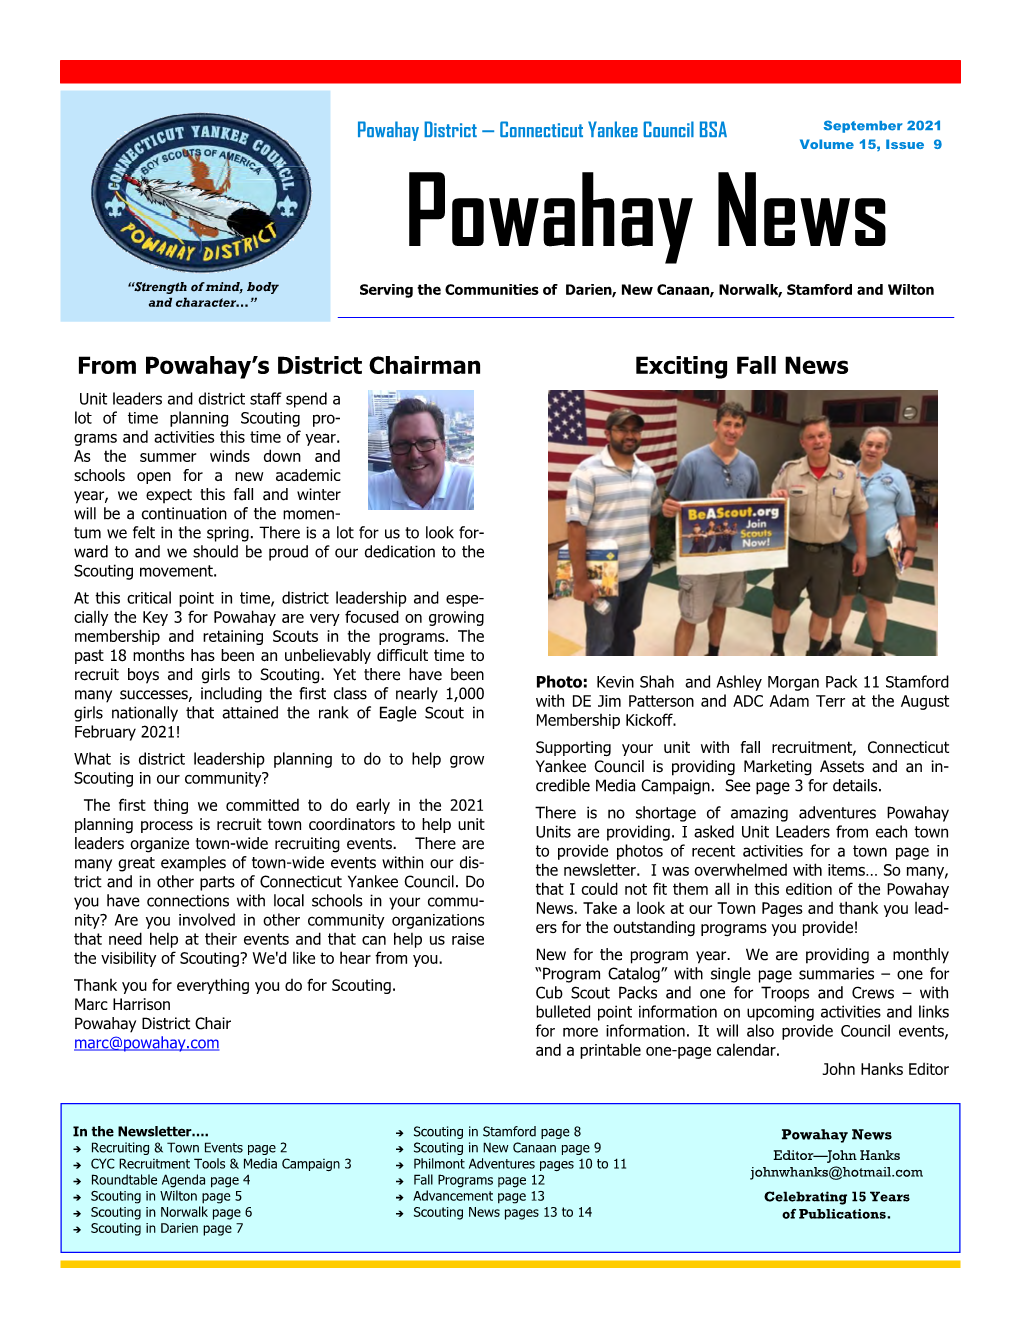 Powahay News